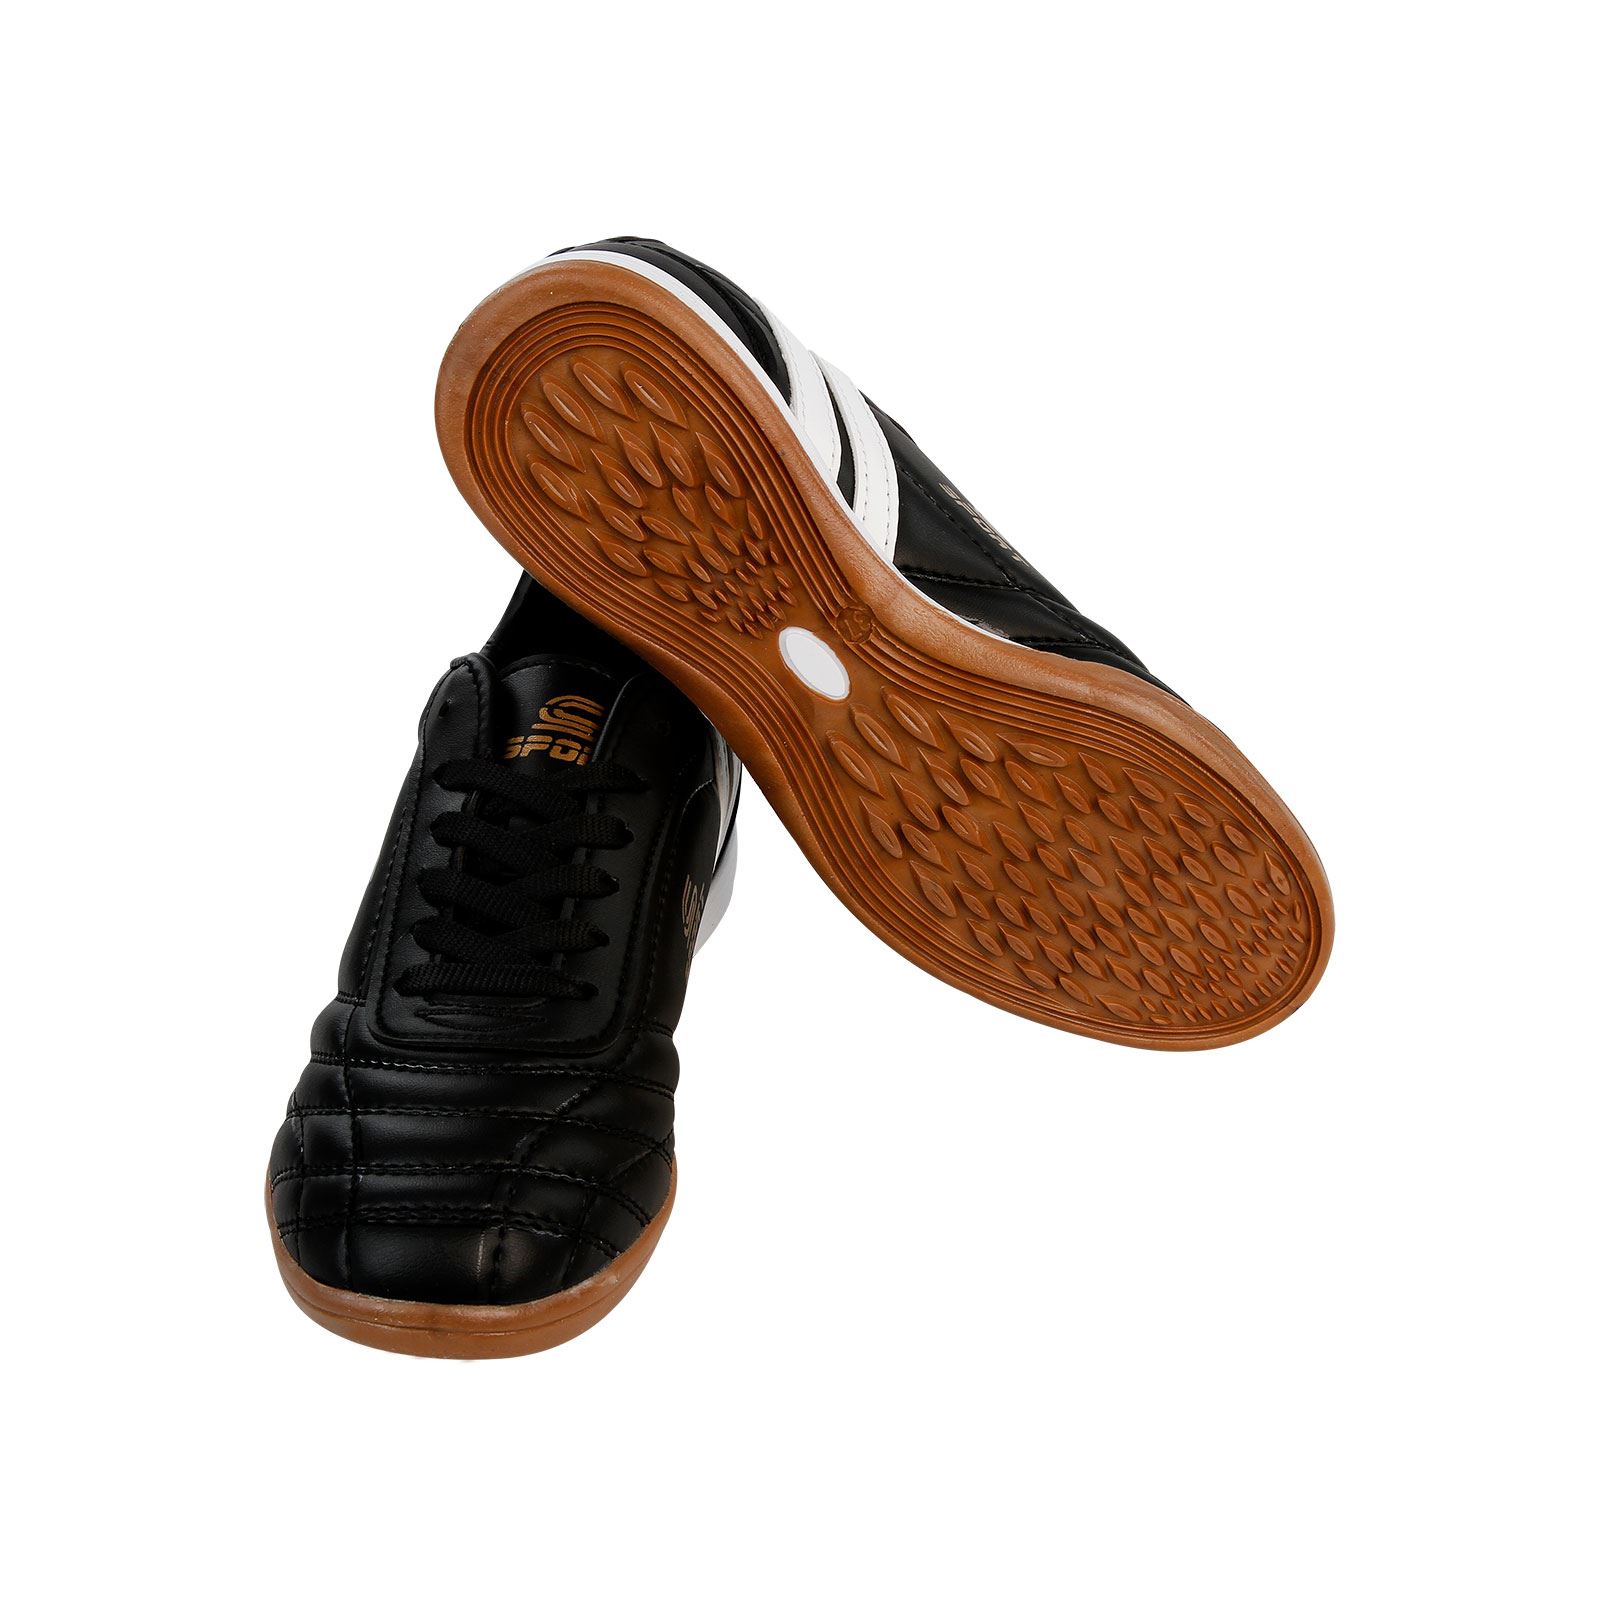 Twingo Erkek Çocuk Halı Saha Spor Ayakkabı 36-39 Numara Siyah Siyah